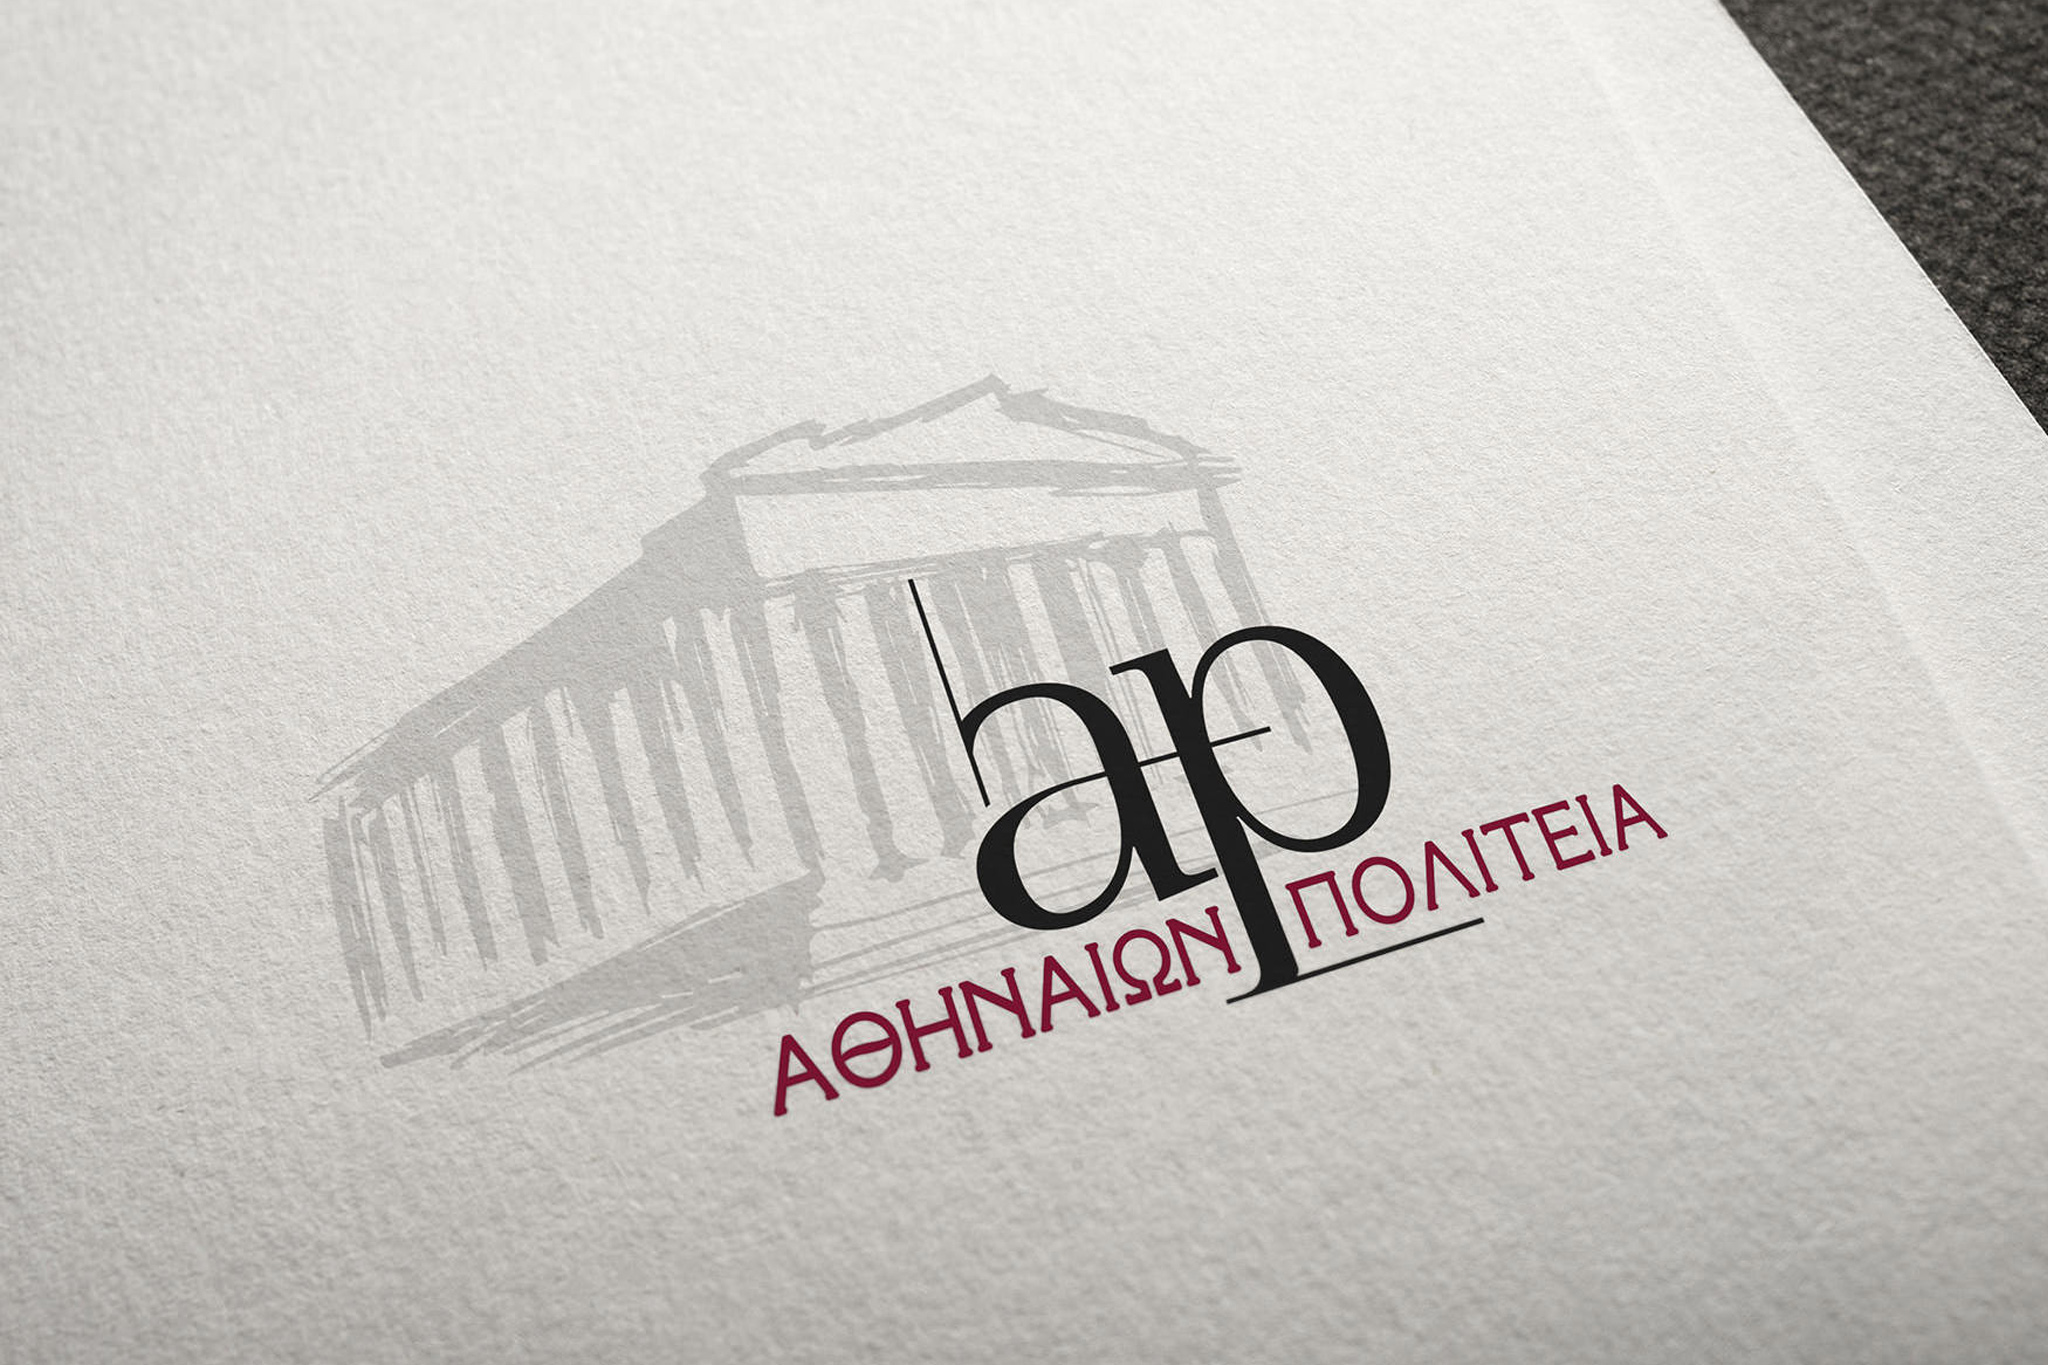 Athinaion politeia logo printed